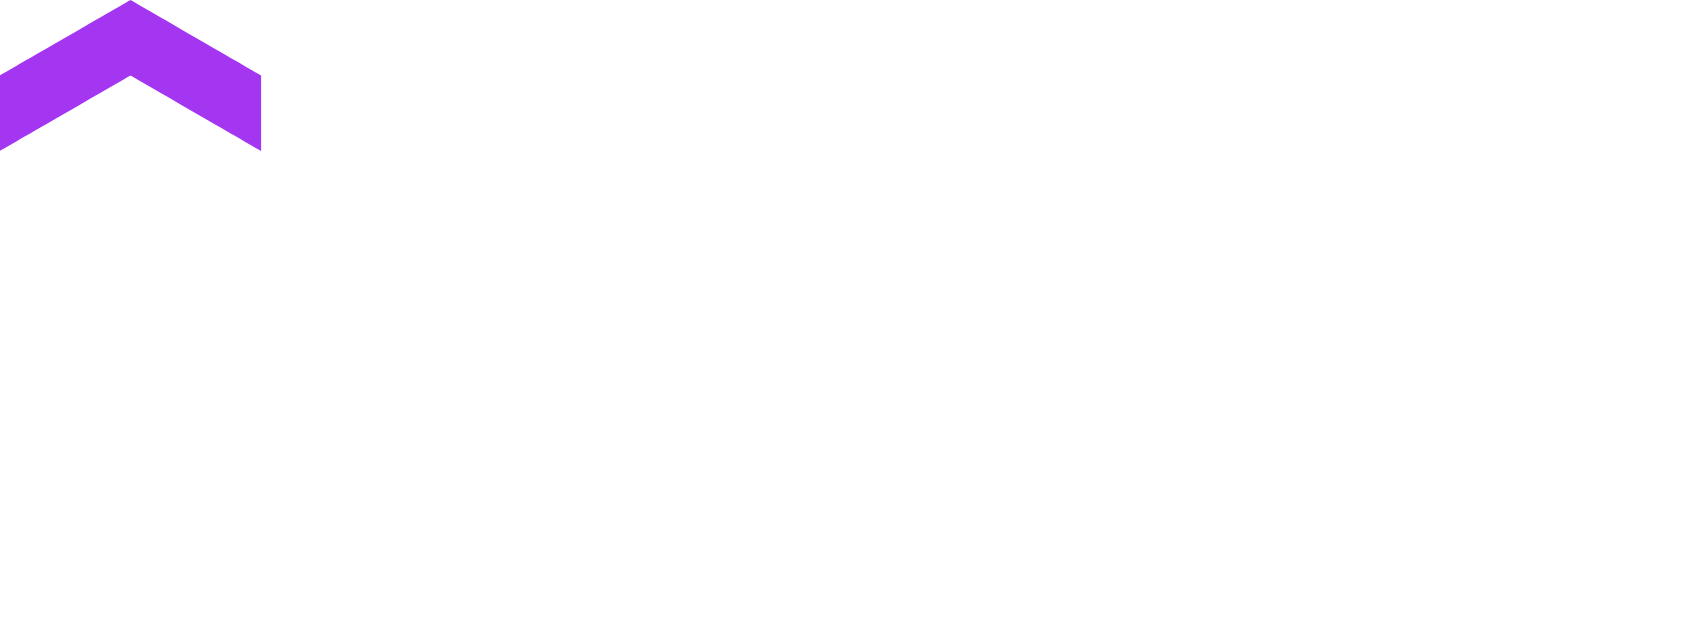 Udemy logo large for dark backgrounds (transparent PNG)